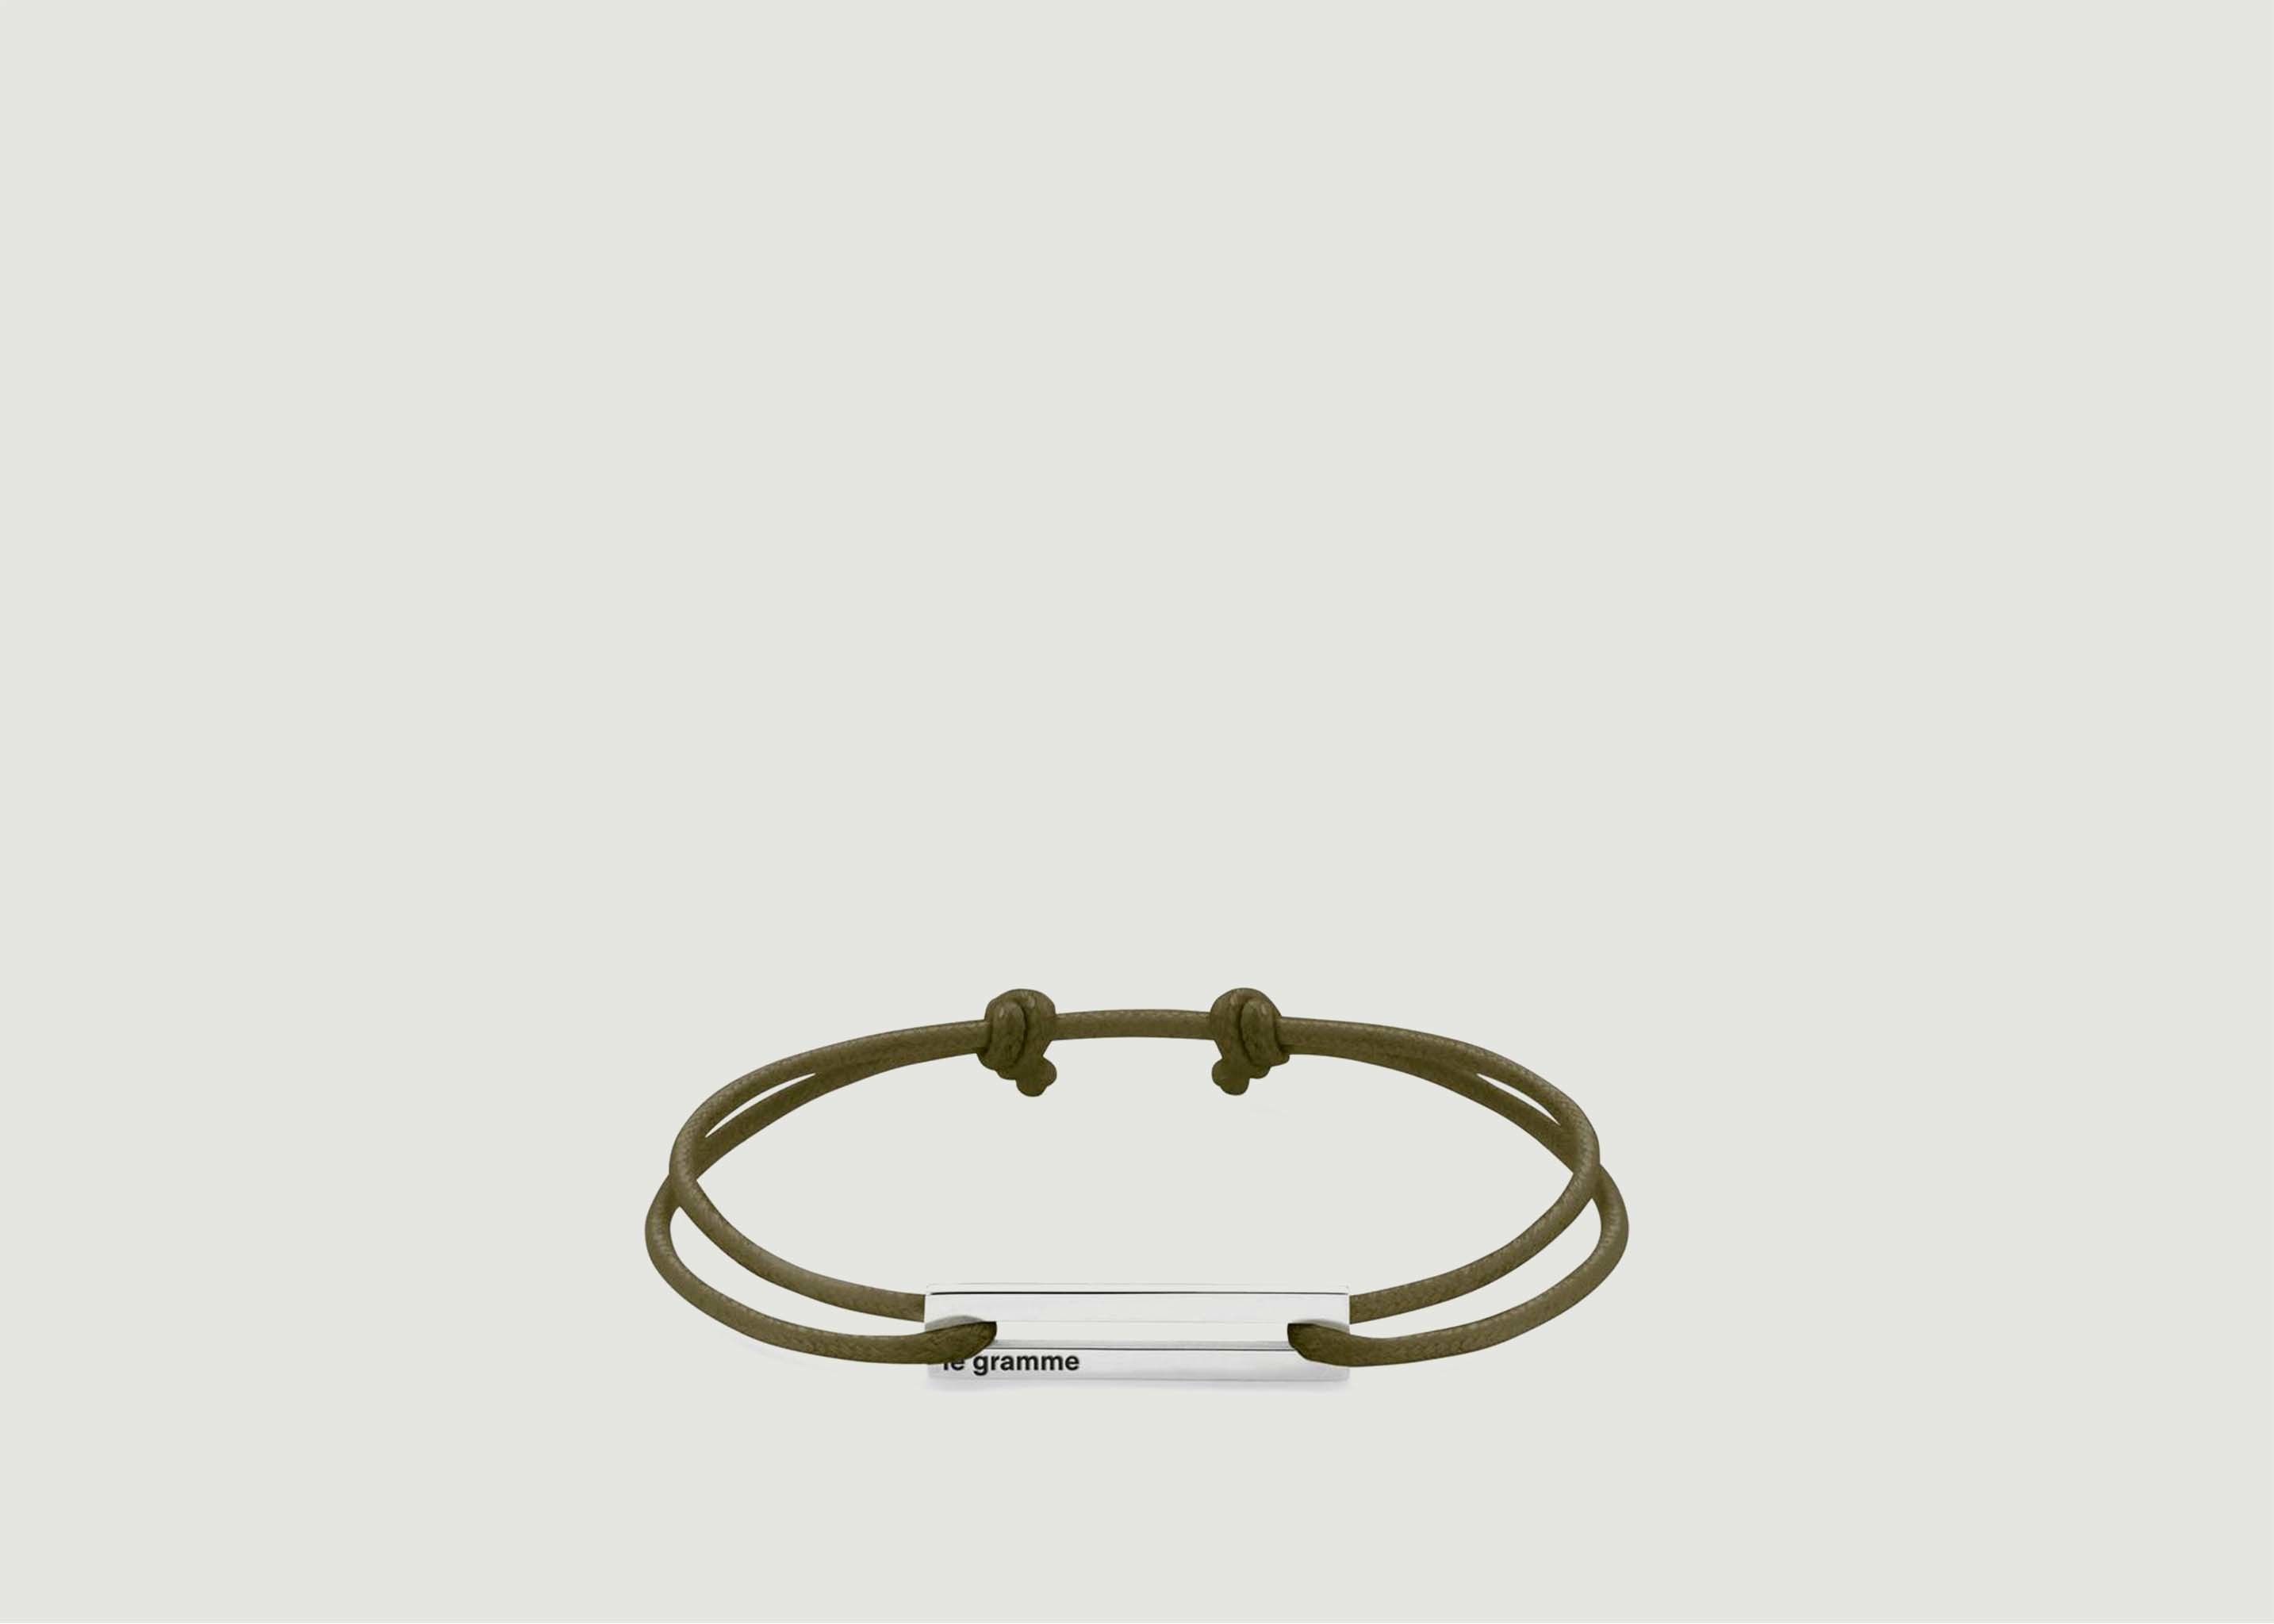 Le Cordon Bracelet 1.7gr - Le Gramme